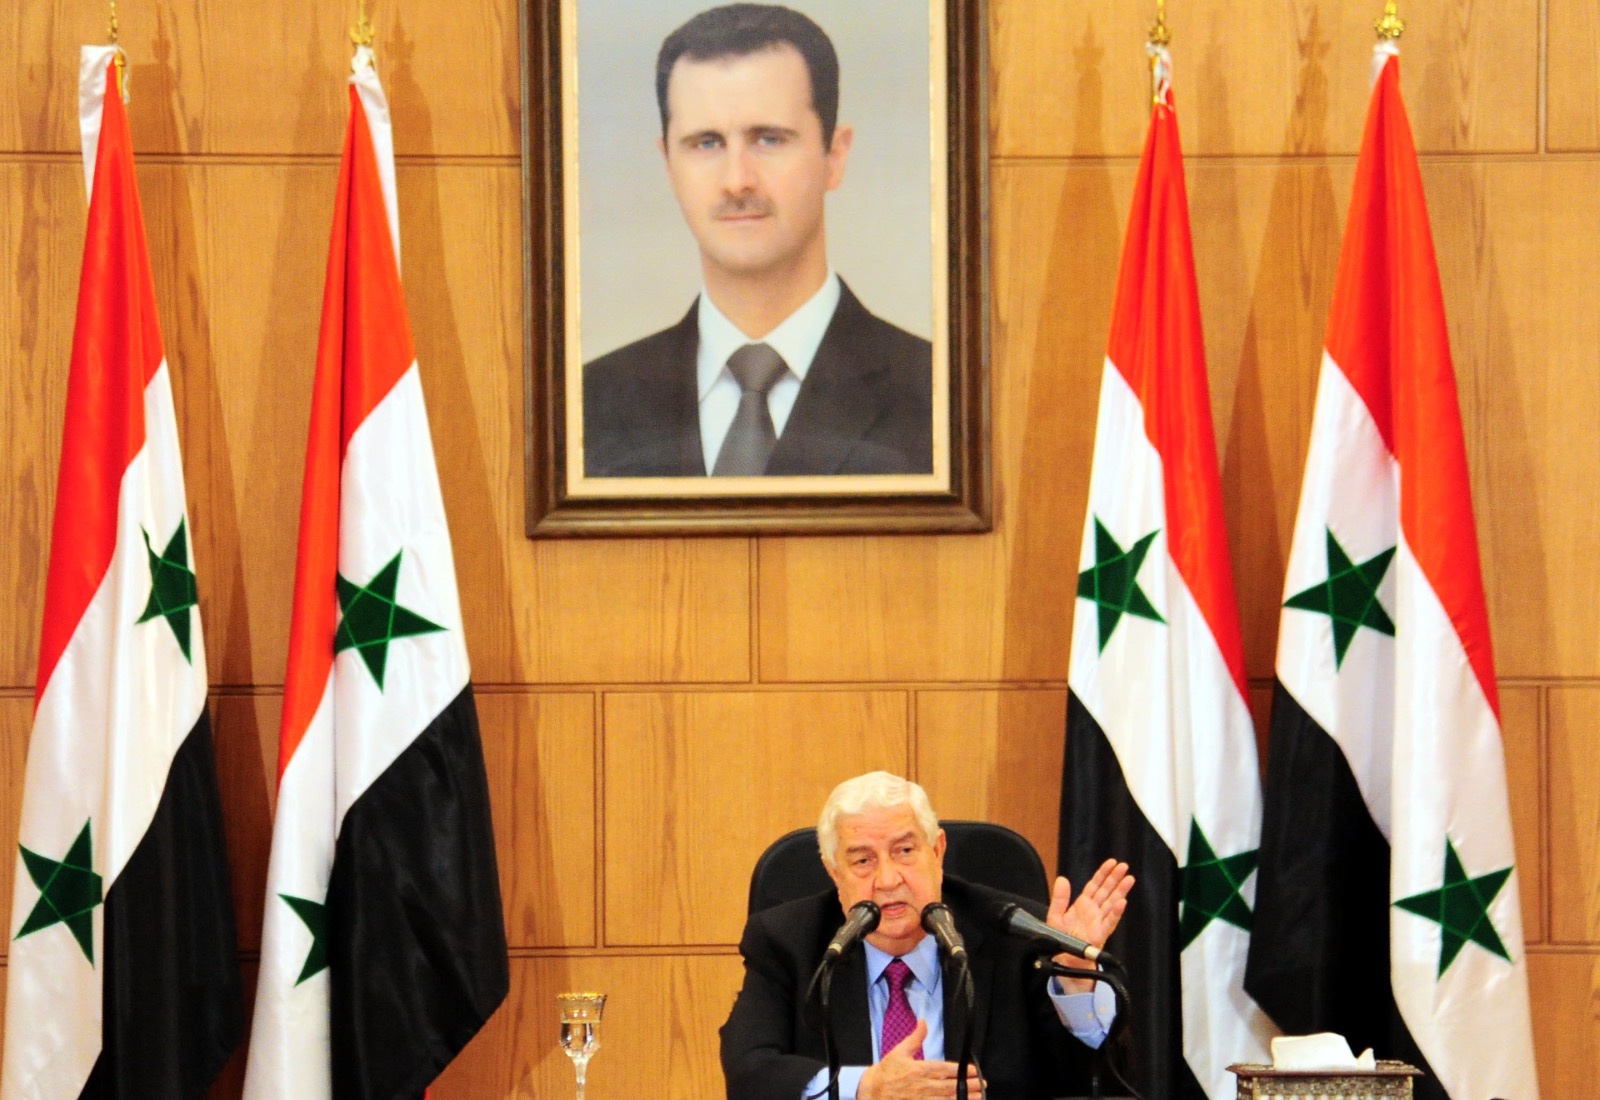 ”Det bedste vi kan håbe på er, at fastfryse situation i Syrien til vi om en ti års tid muligvis kan løse den” – Paul Salem